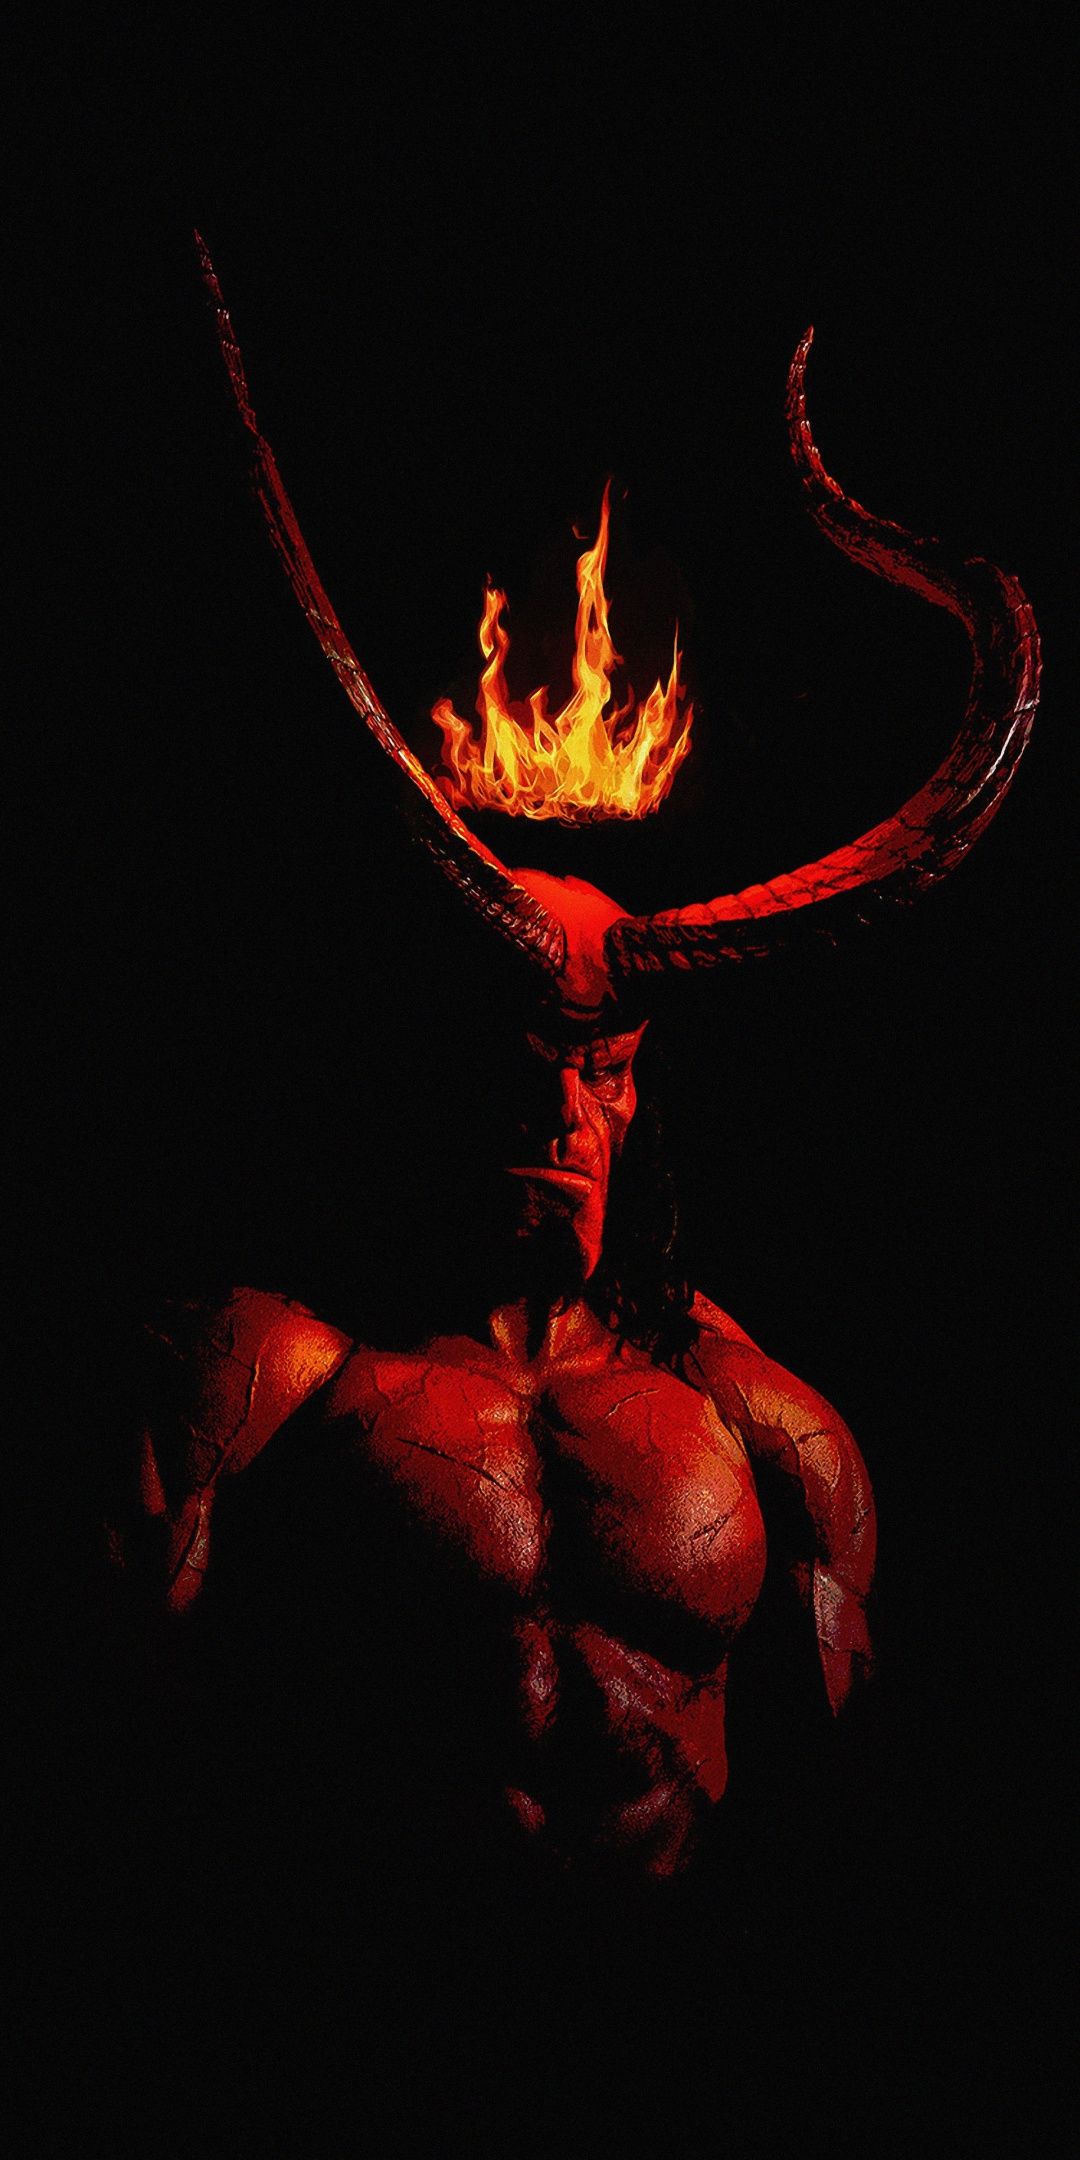 Hellboy 2019 Movie Artwork Wallpapers